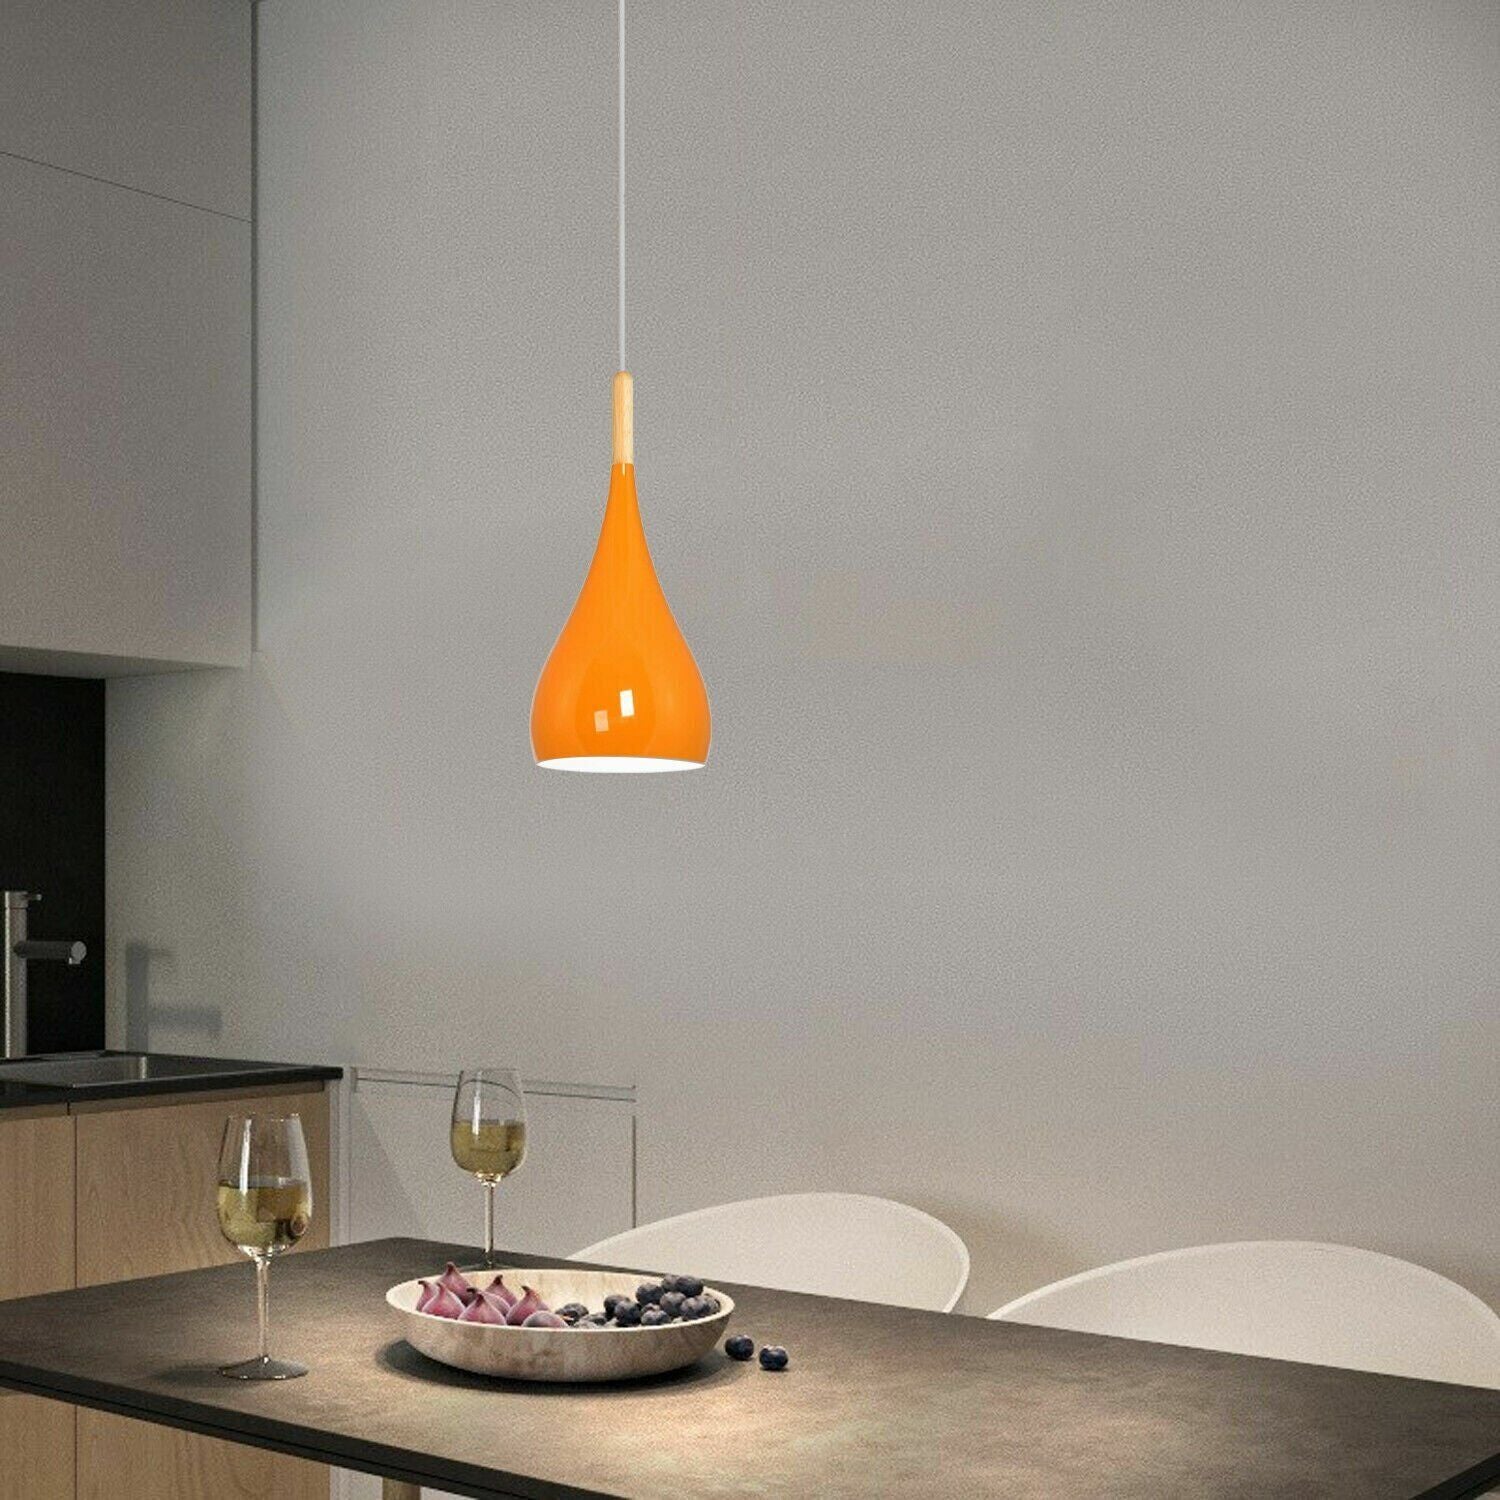 Orange ceiling pendant light over Dining table light